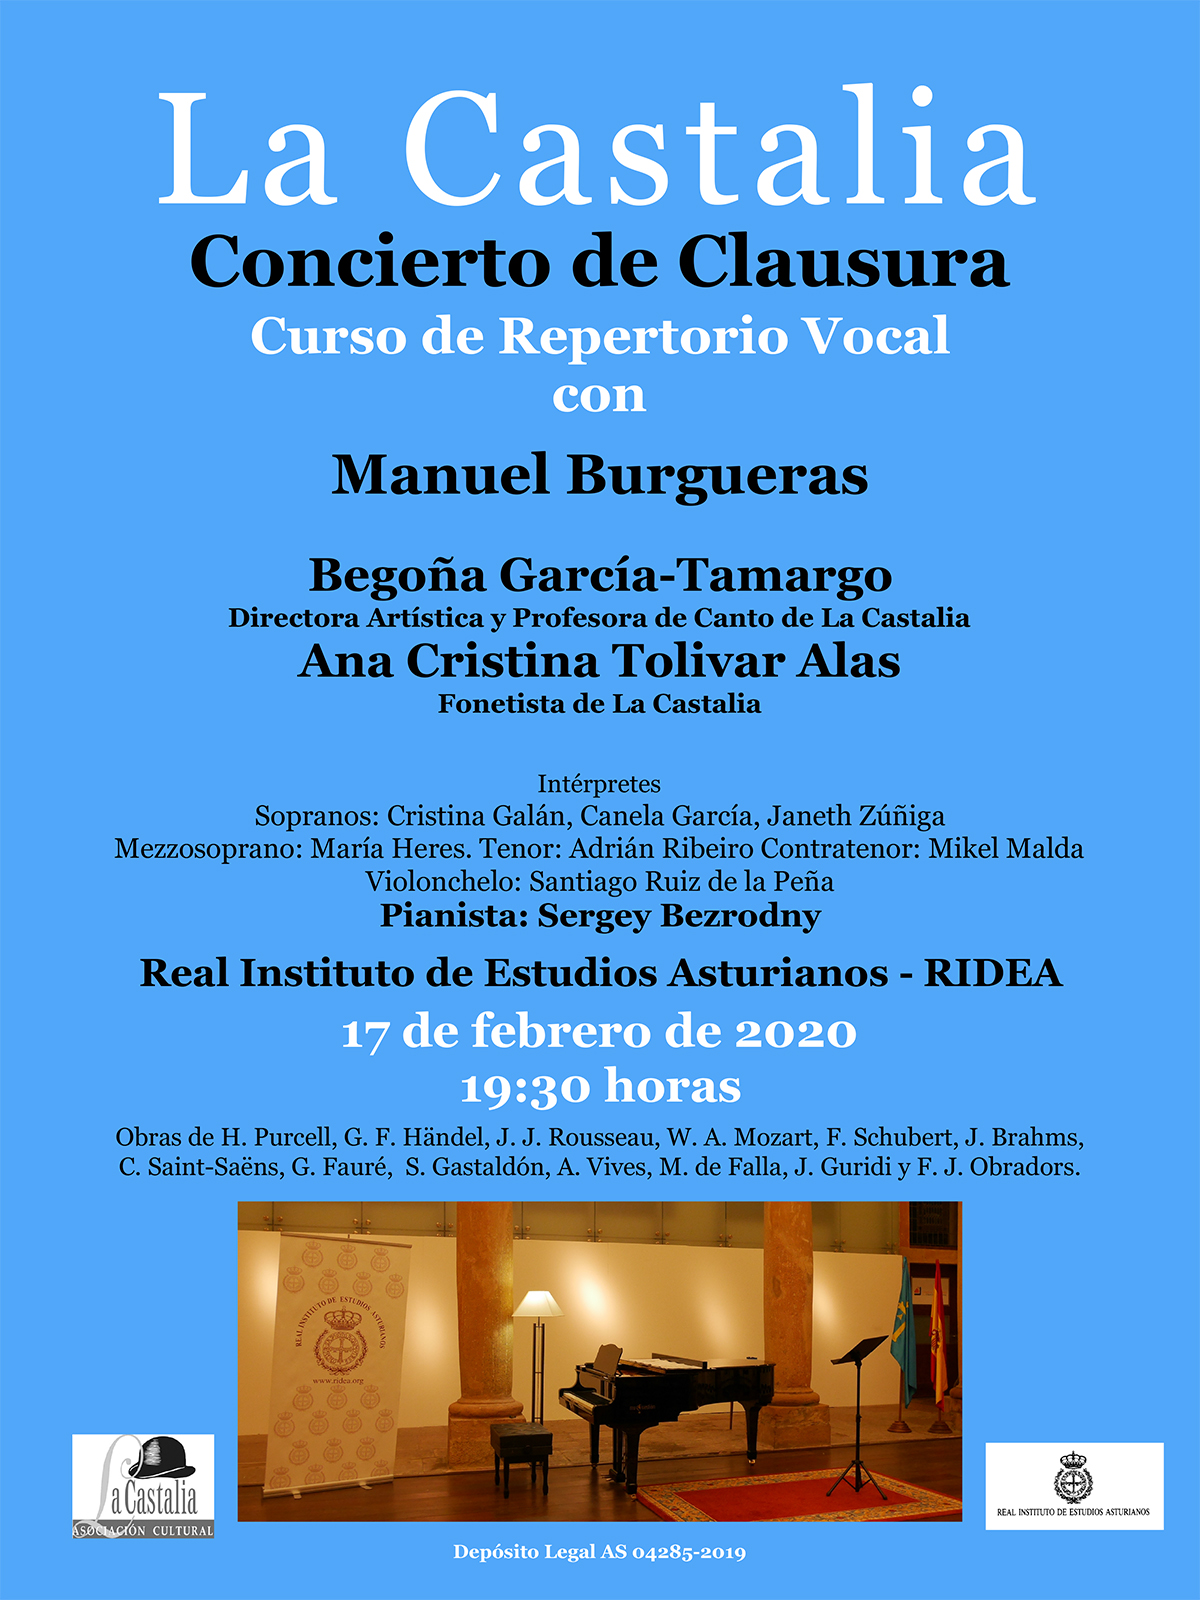 Imagen - Concierto de Clausura Curso de Repertorio Vocal (LA CASTALIA)